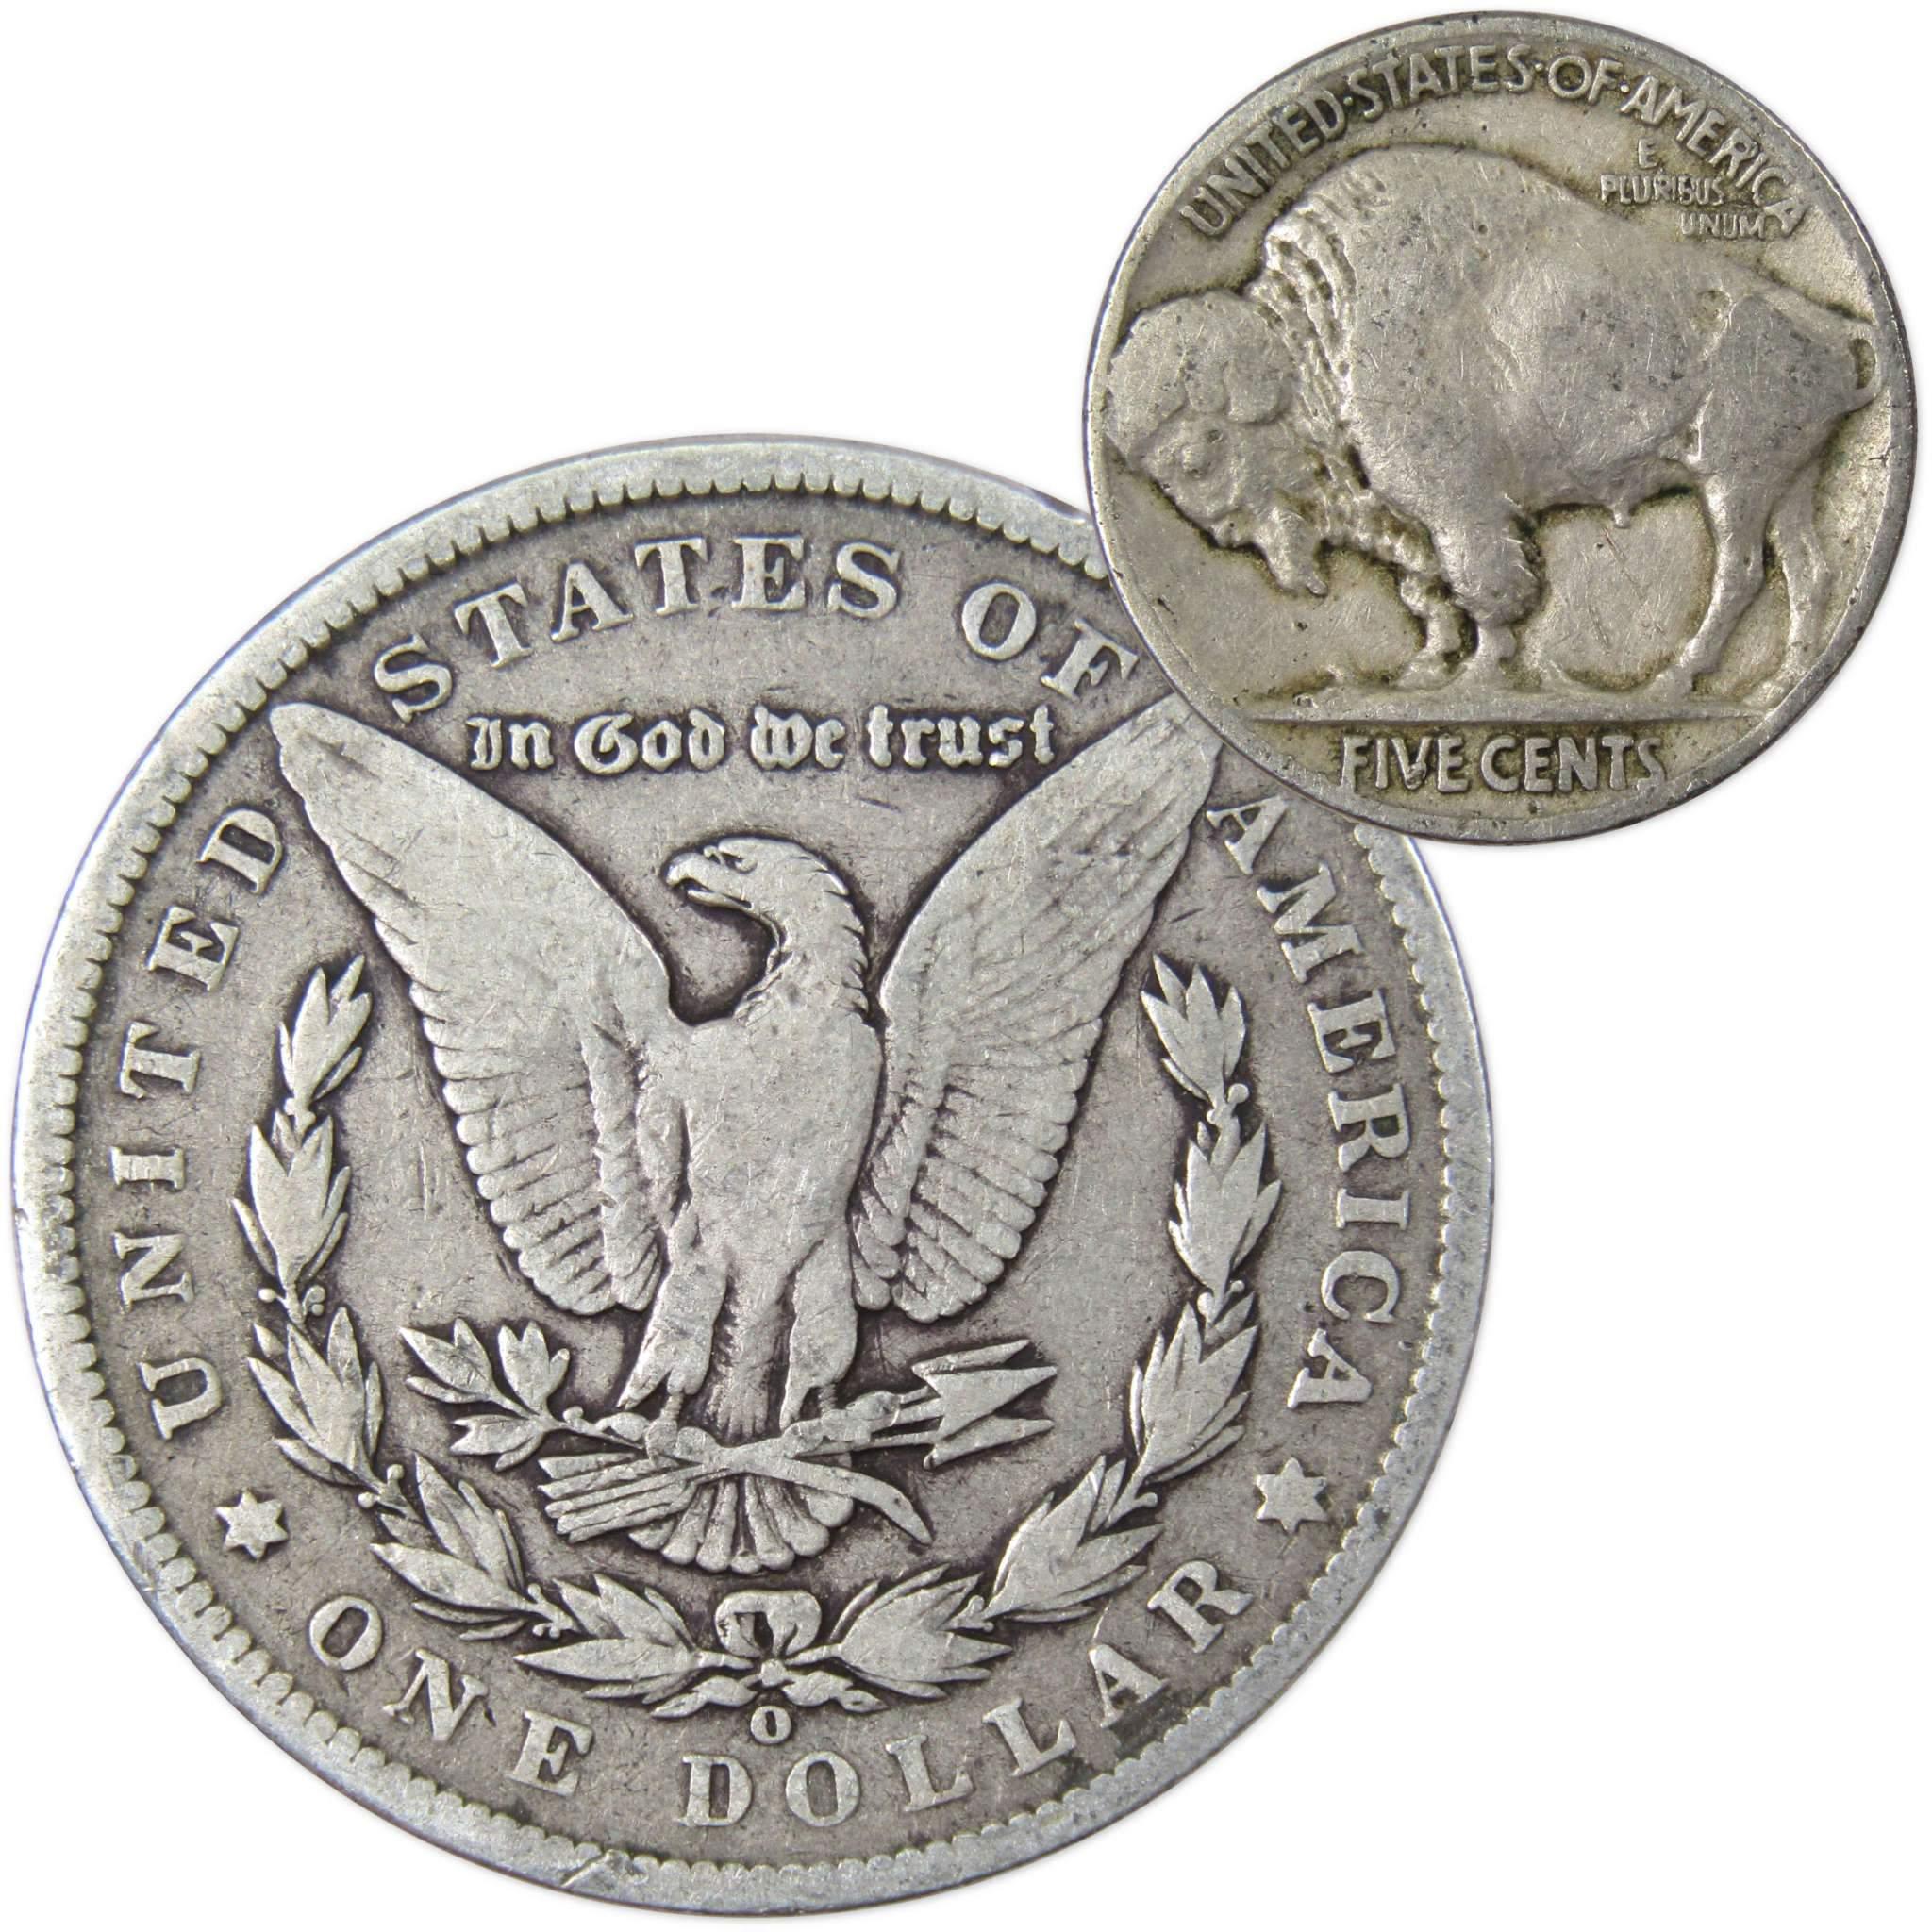 1900 O Morgan Dollar VG Very Good 90% Silver with 1926 Buffalo Nickel F Fine - Morgan coin - Morgan silver dollar - Morgan silver dollar for sale - Profile Coins &amp; Collectibles